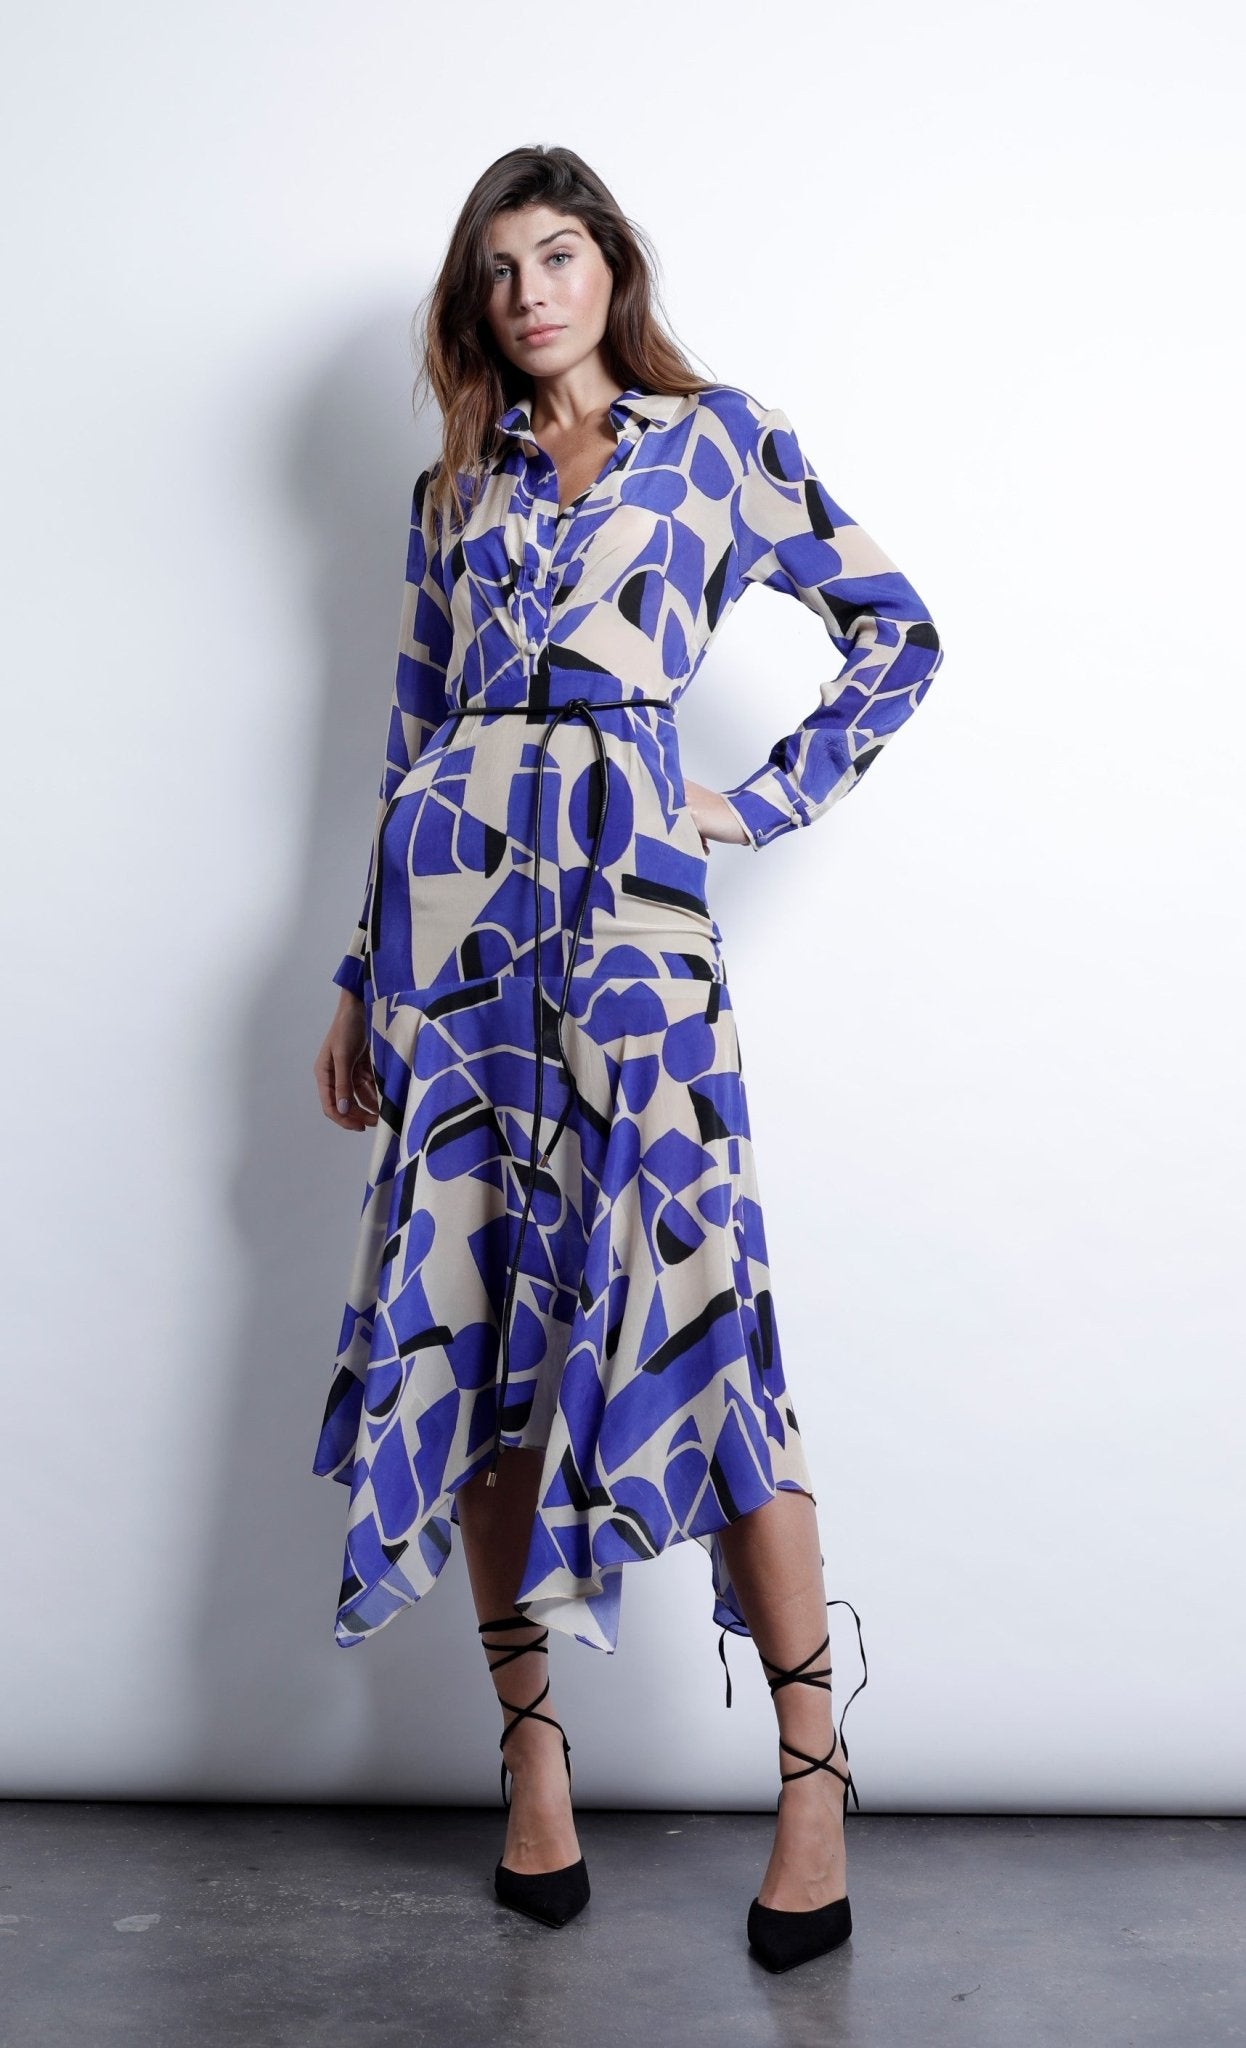 Karina Grimaldi Sienna Print Dress in Blue Geo - Estilo Boutique